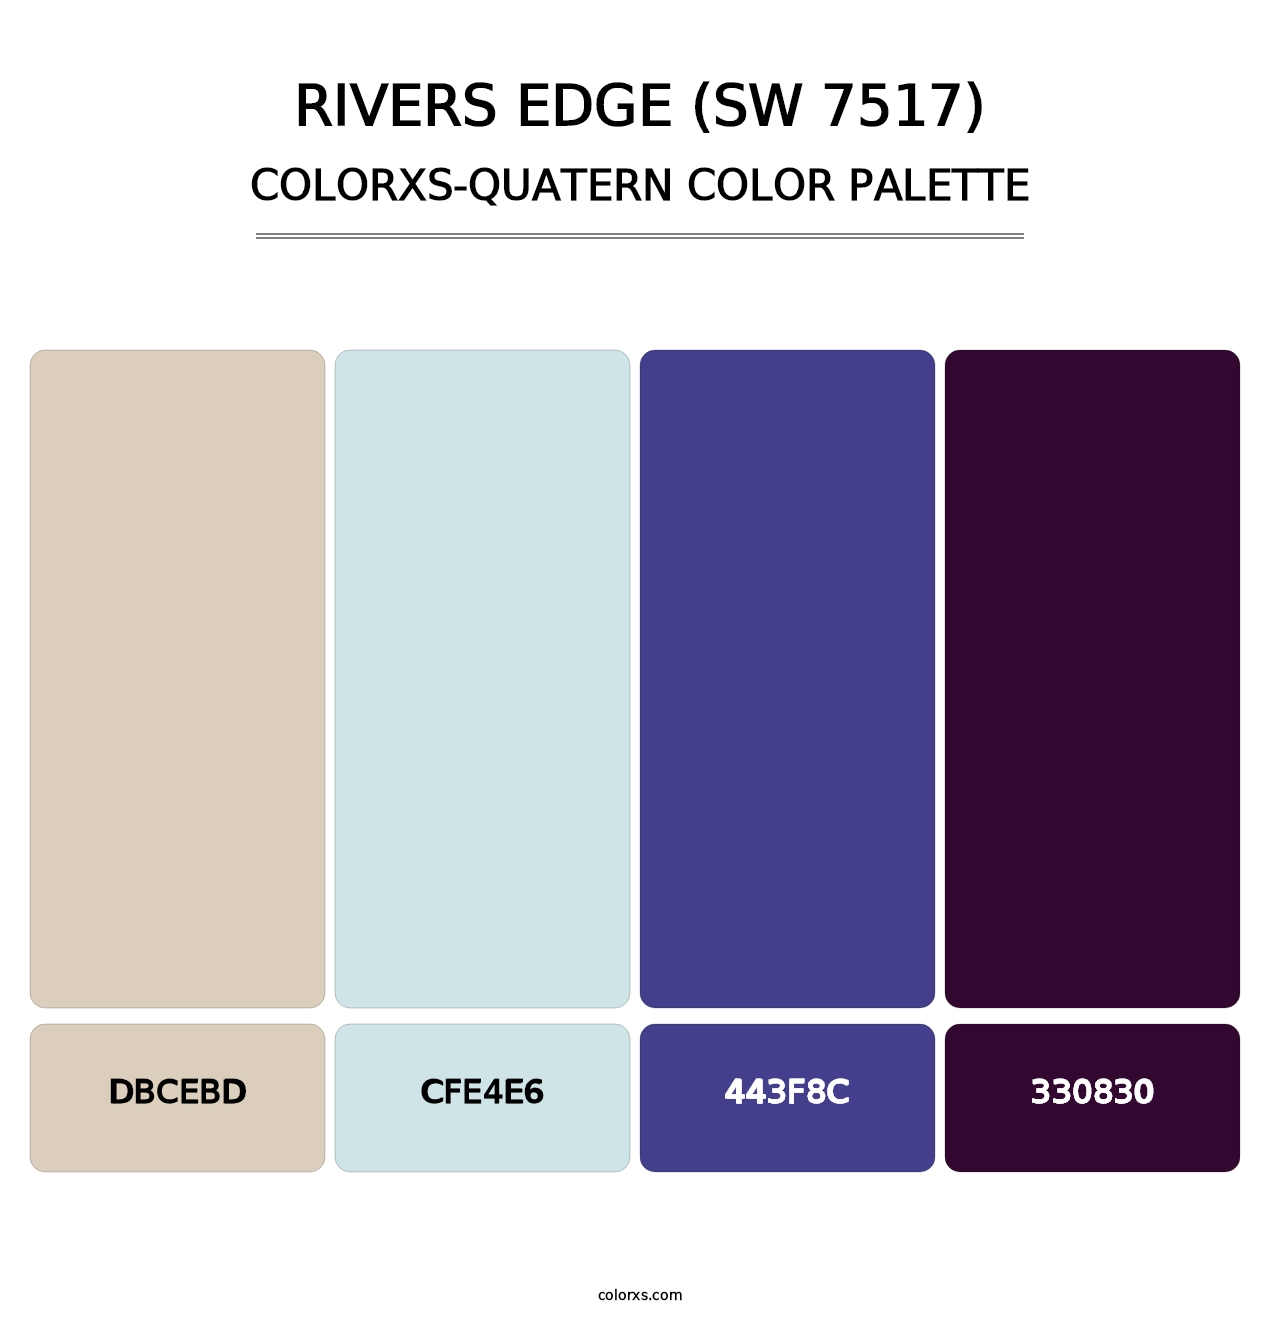 Rivers Edge (SW 7517) - Colorxs Quatern Palette